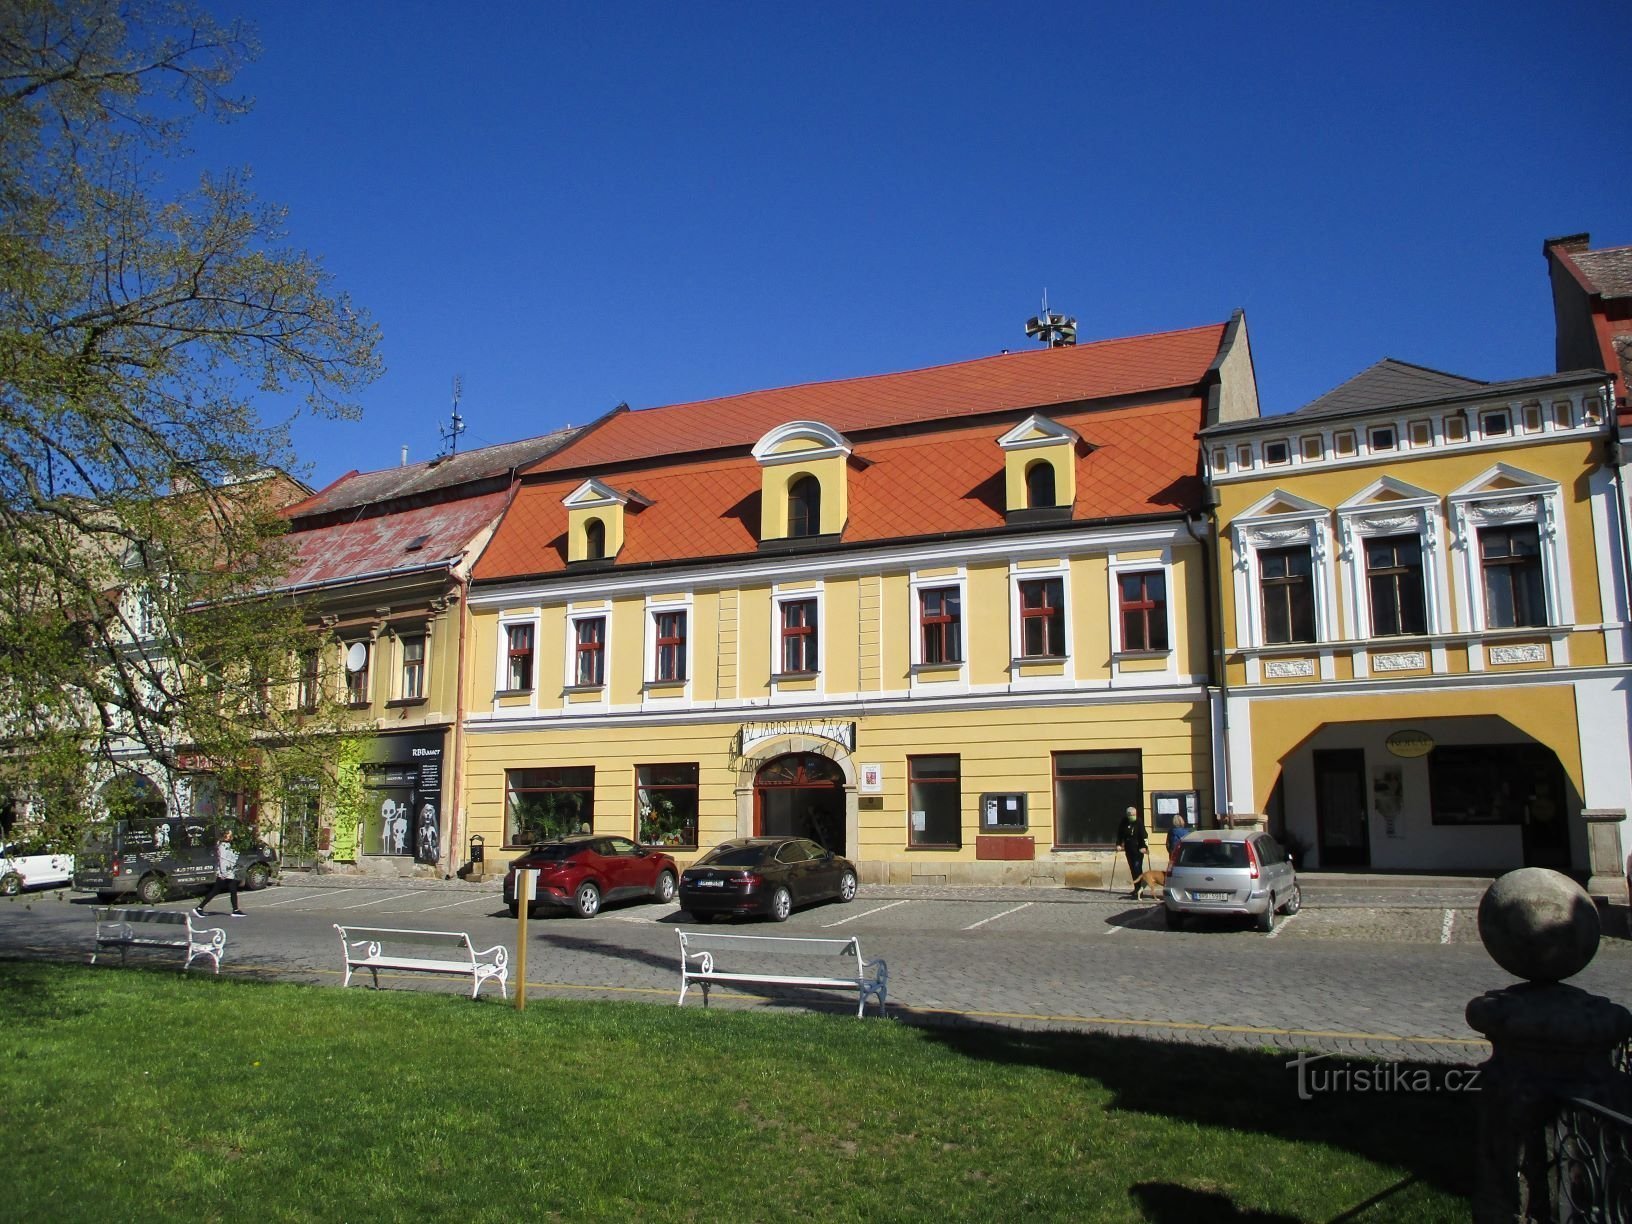 Tschechoslowakischer Armeeplatz Nr. 49 (Jaroměř, 22.4.2020)